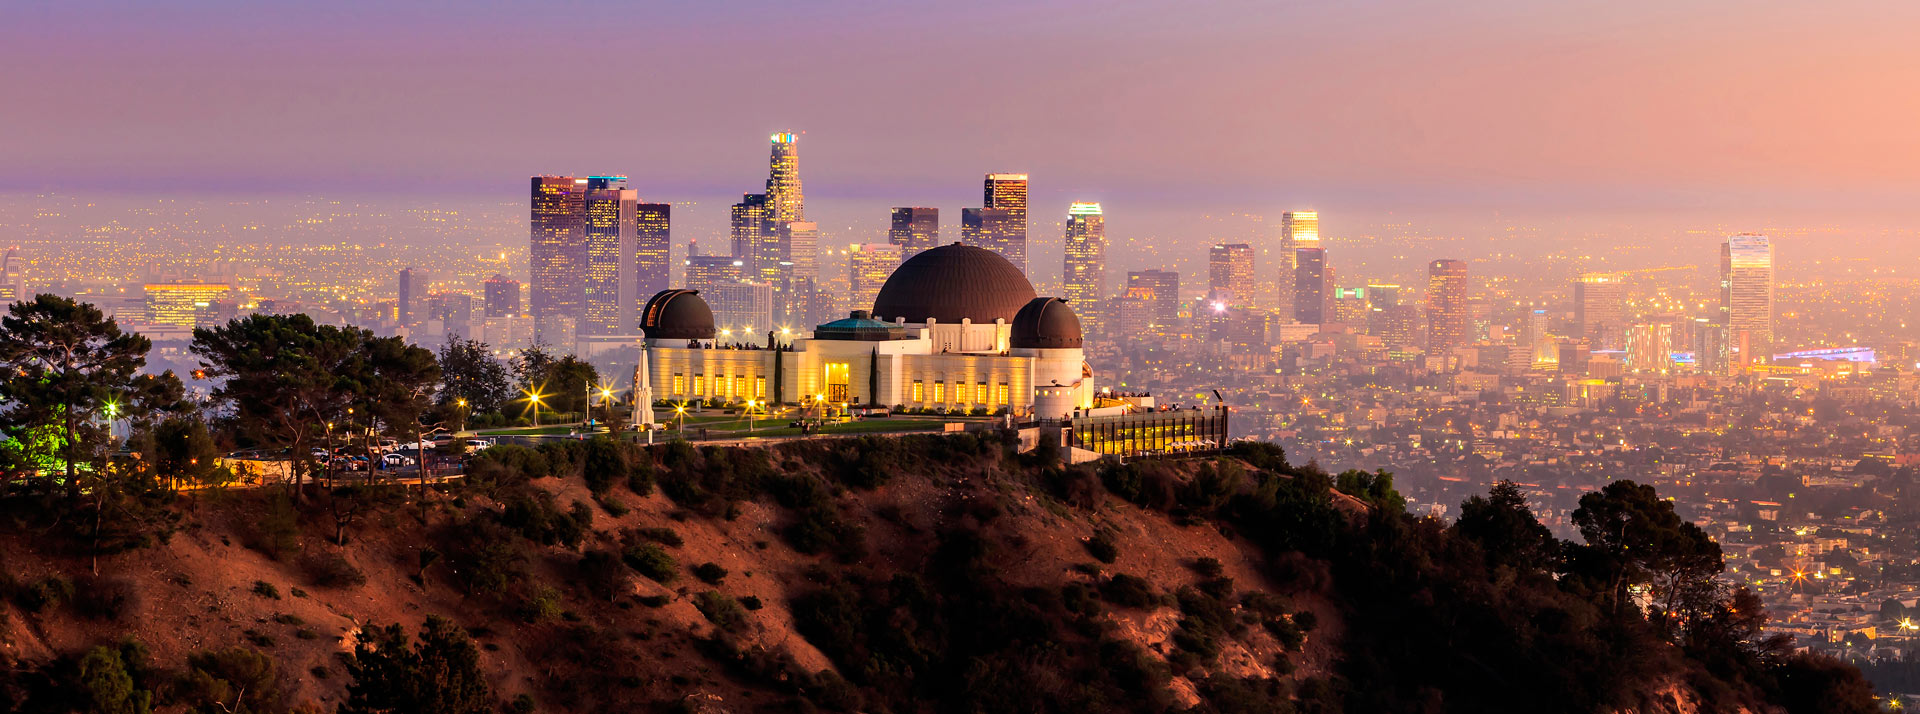 Alquiler de carros Los Angeles-LAX | RentingCarz